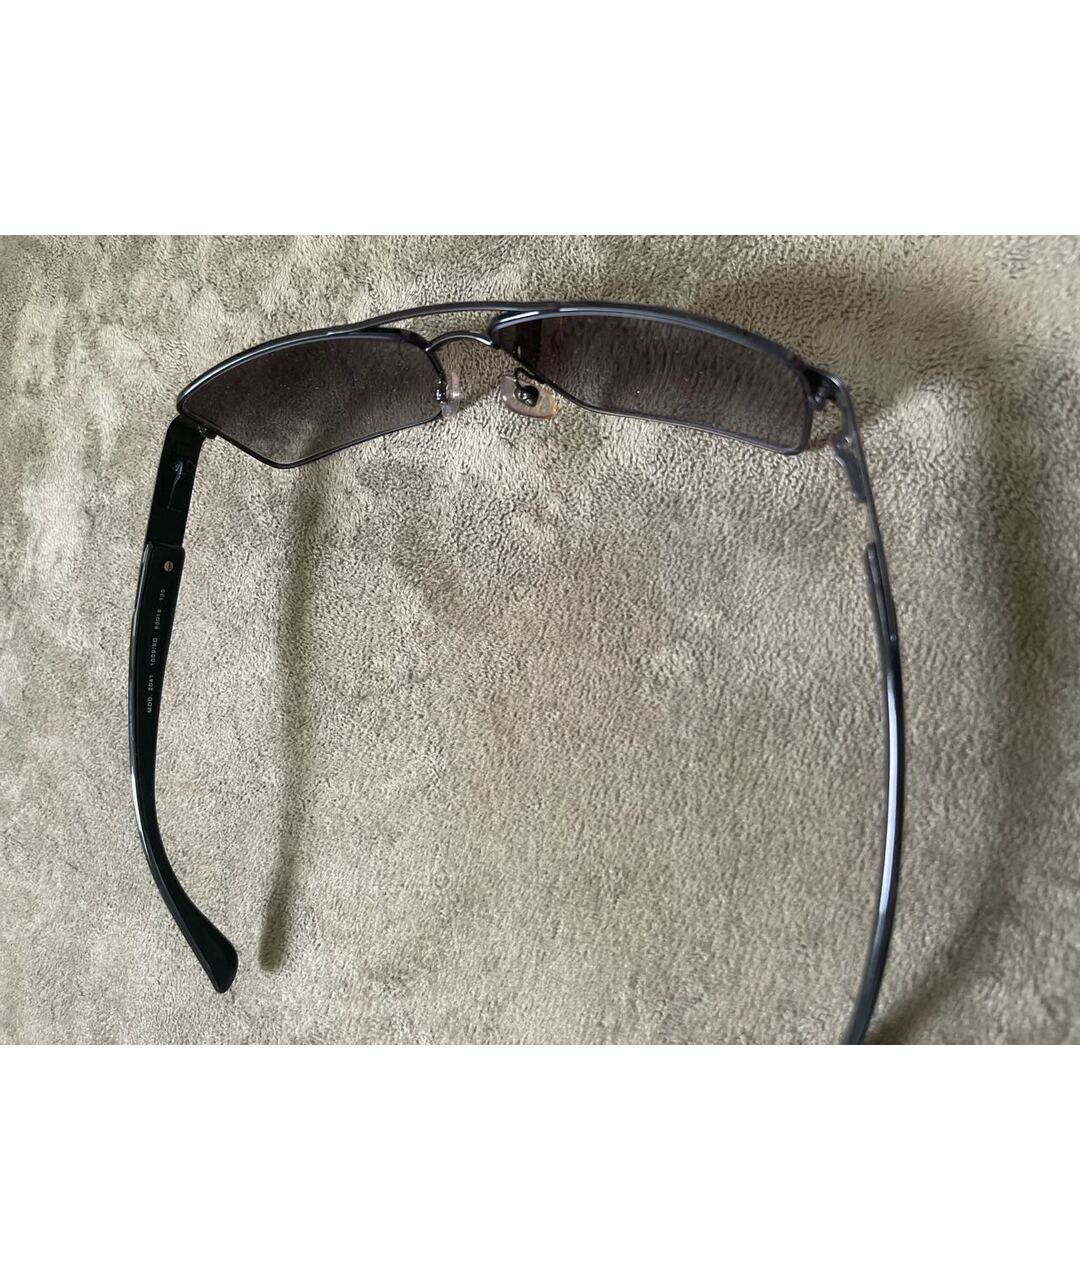 VERSACE Черные металлические солнцезащитные очки, фото 3